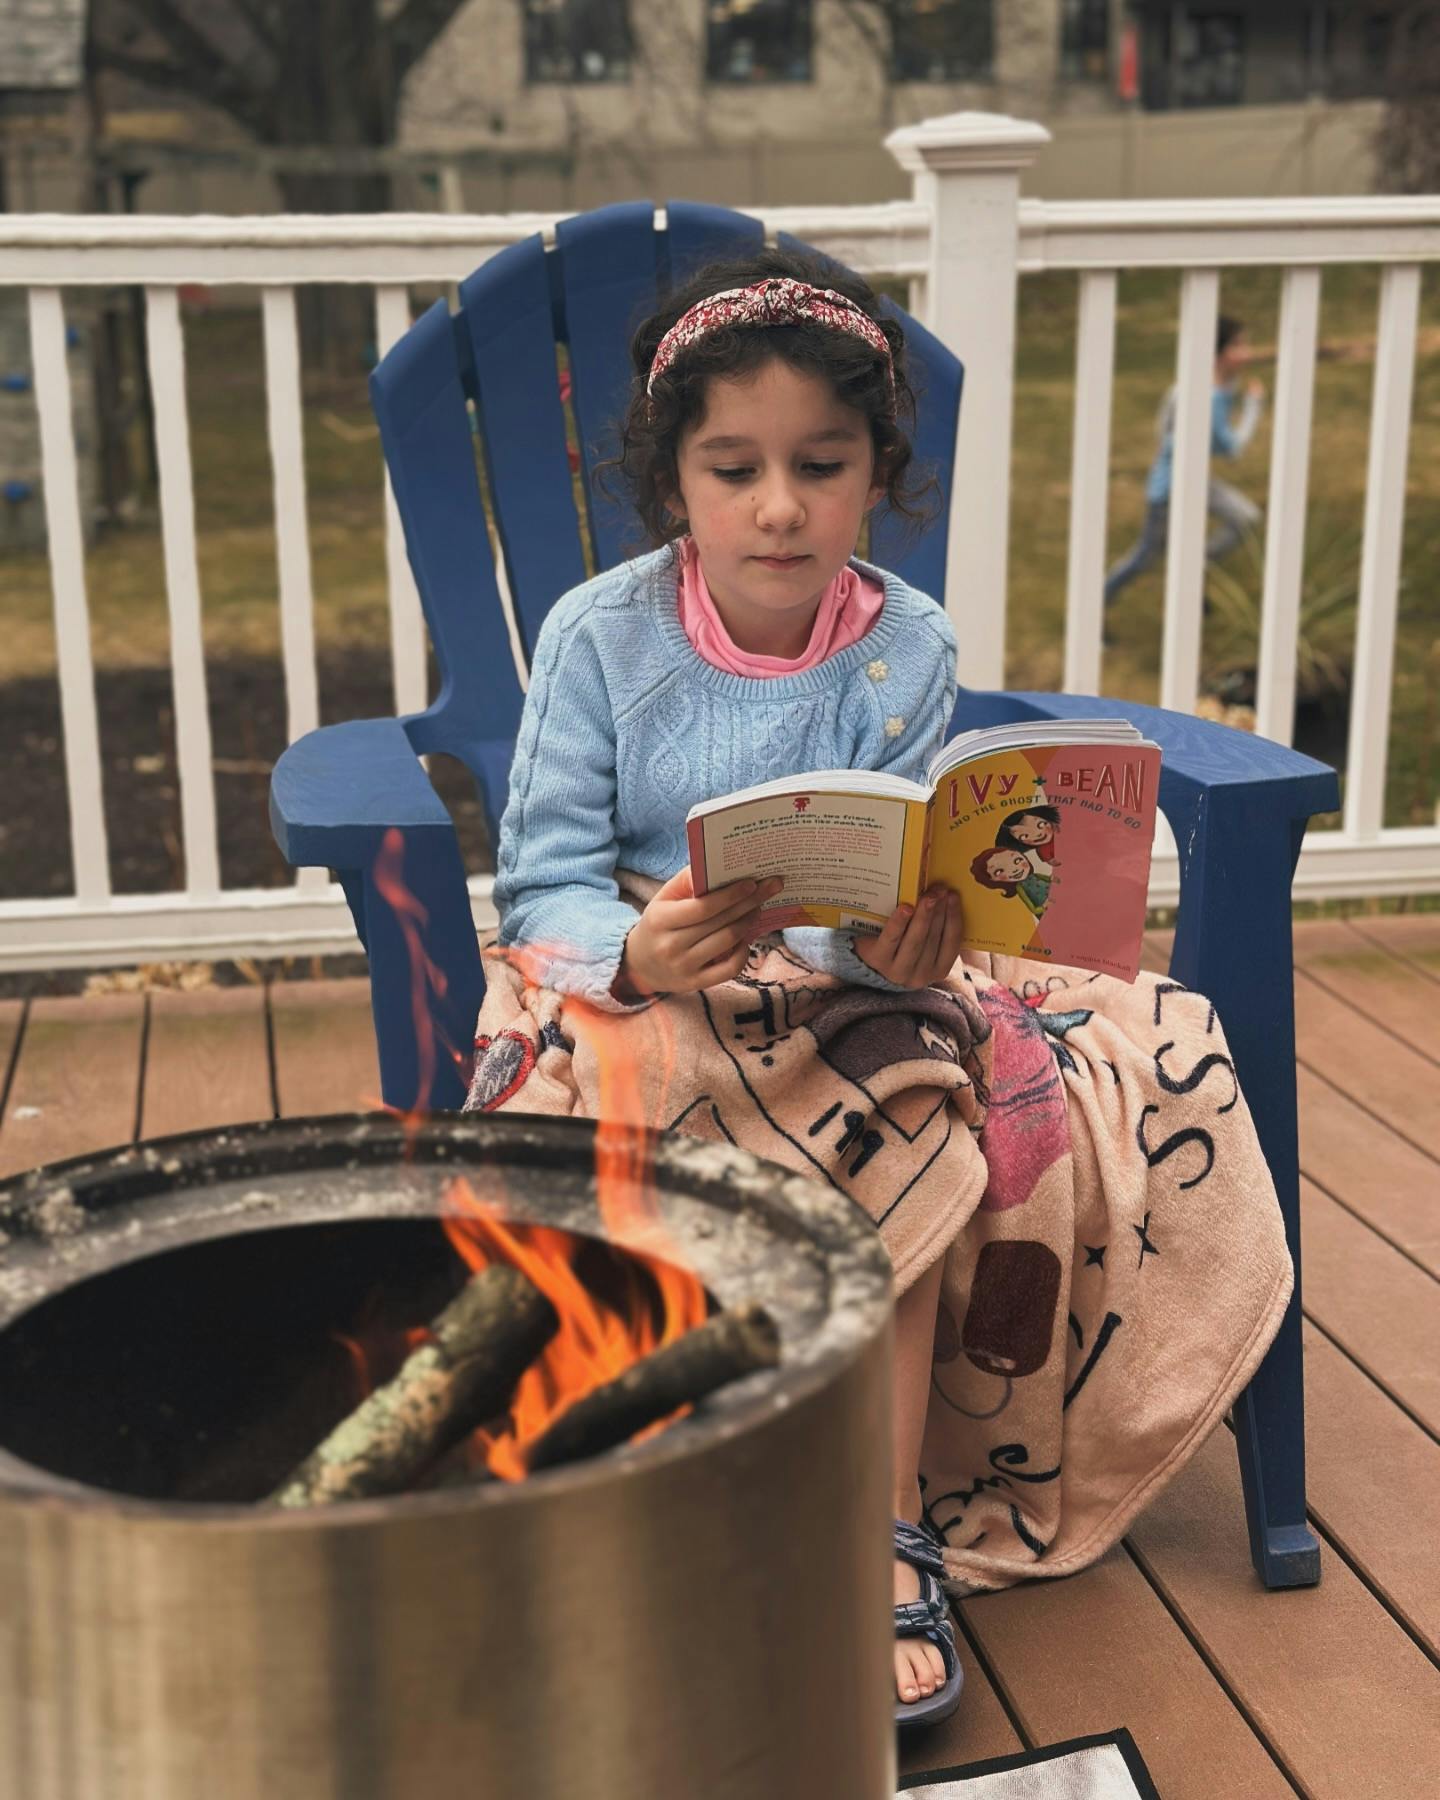 My outdoor girl (swiftie blanket and book)